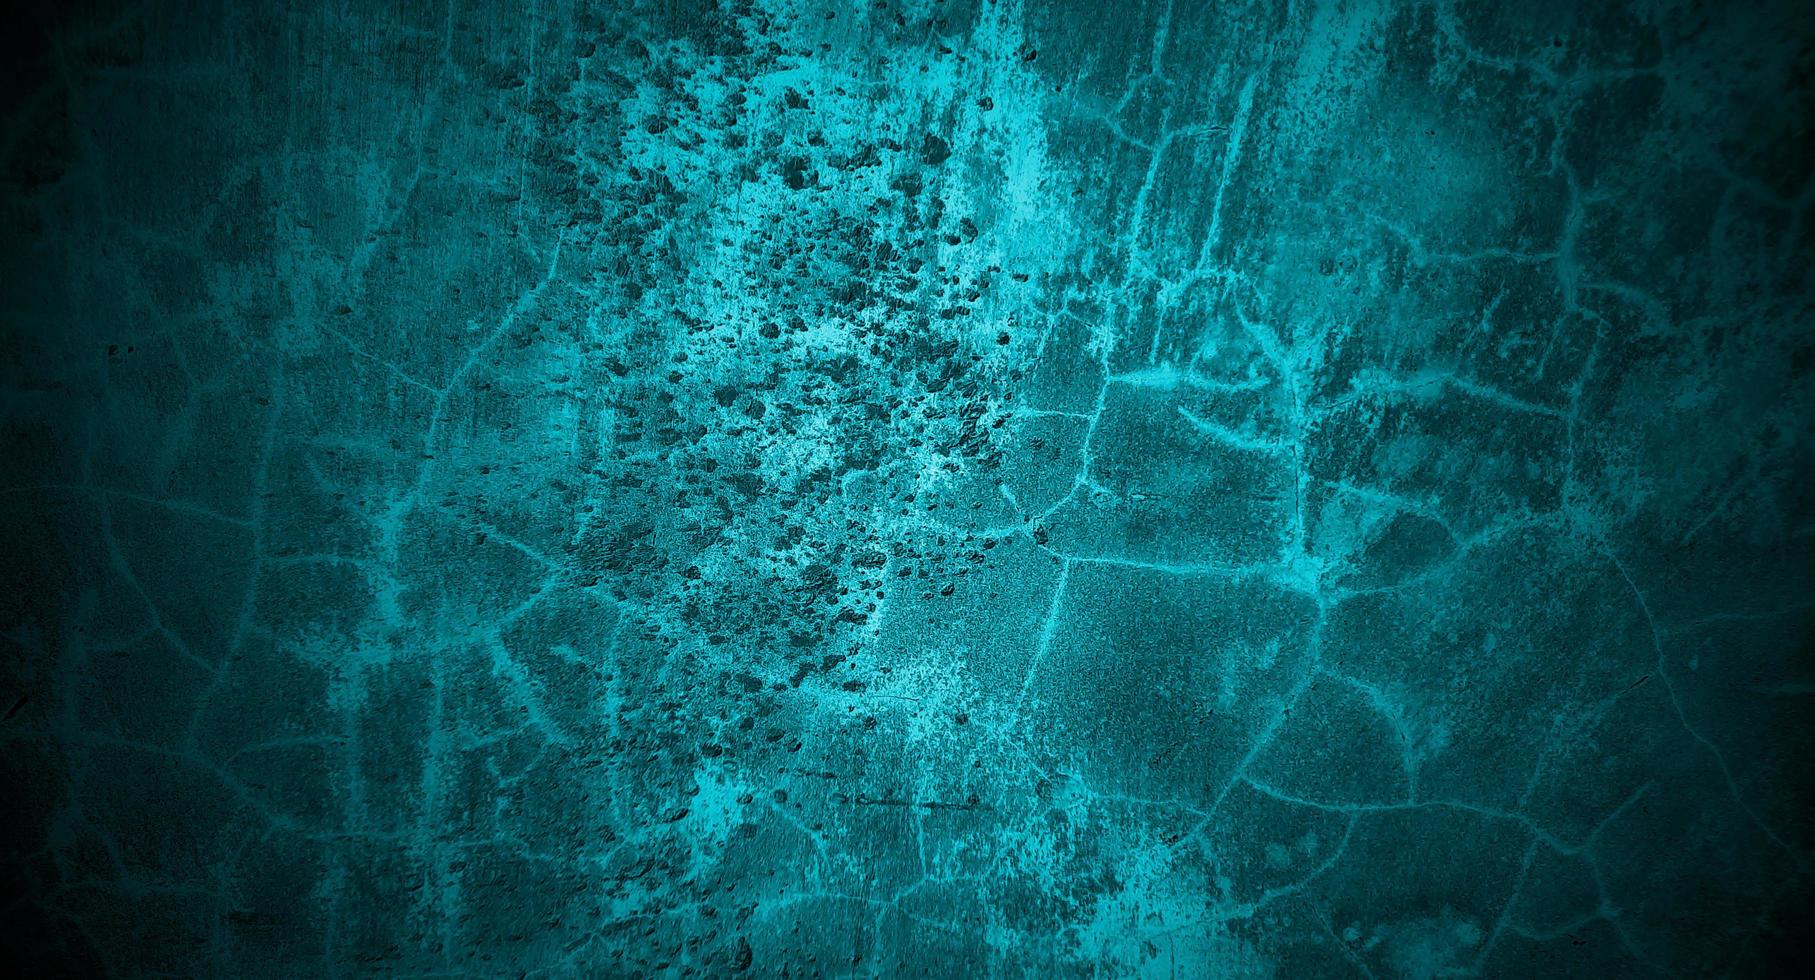 béton bleu effrayant pour le fond. concept de fond halloween mur bleu foncé. texture de ciment d'horreur photo